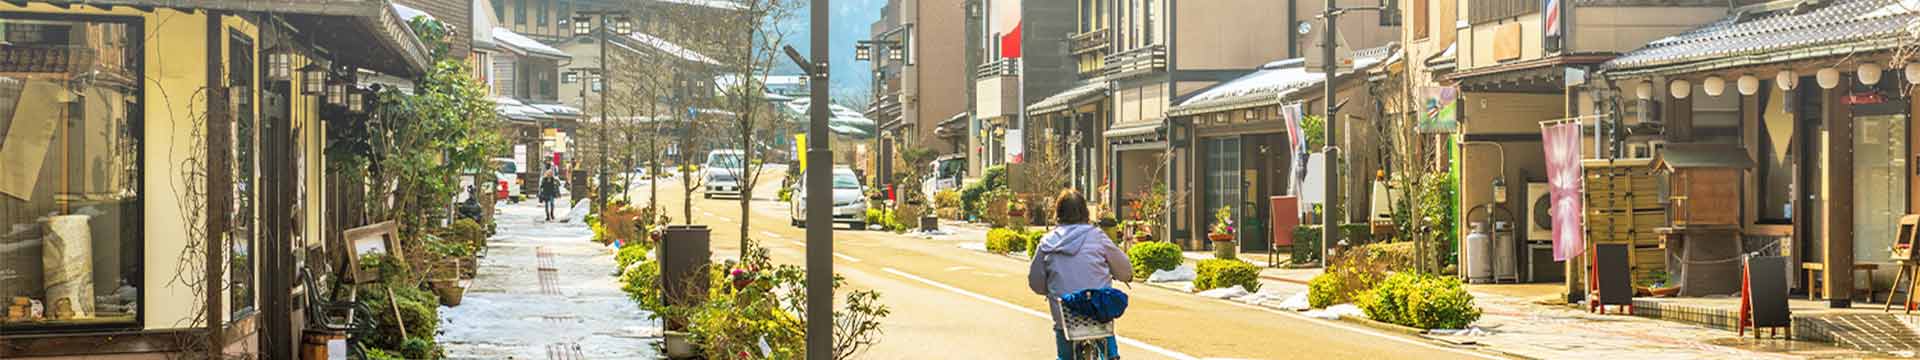 คนญี่ปุ่นกังวลหรือไม่ เมื่อประชากรในประเทศลดลงตลอดเวลา